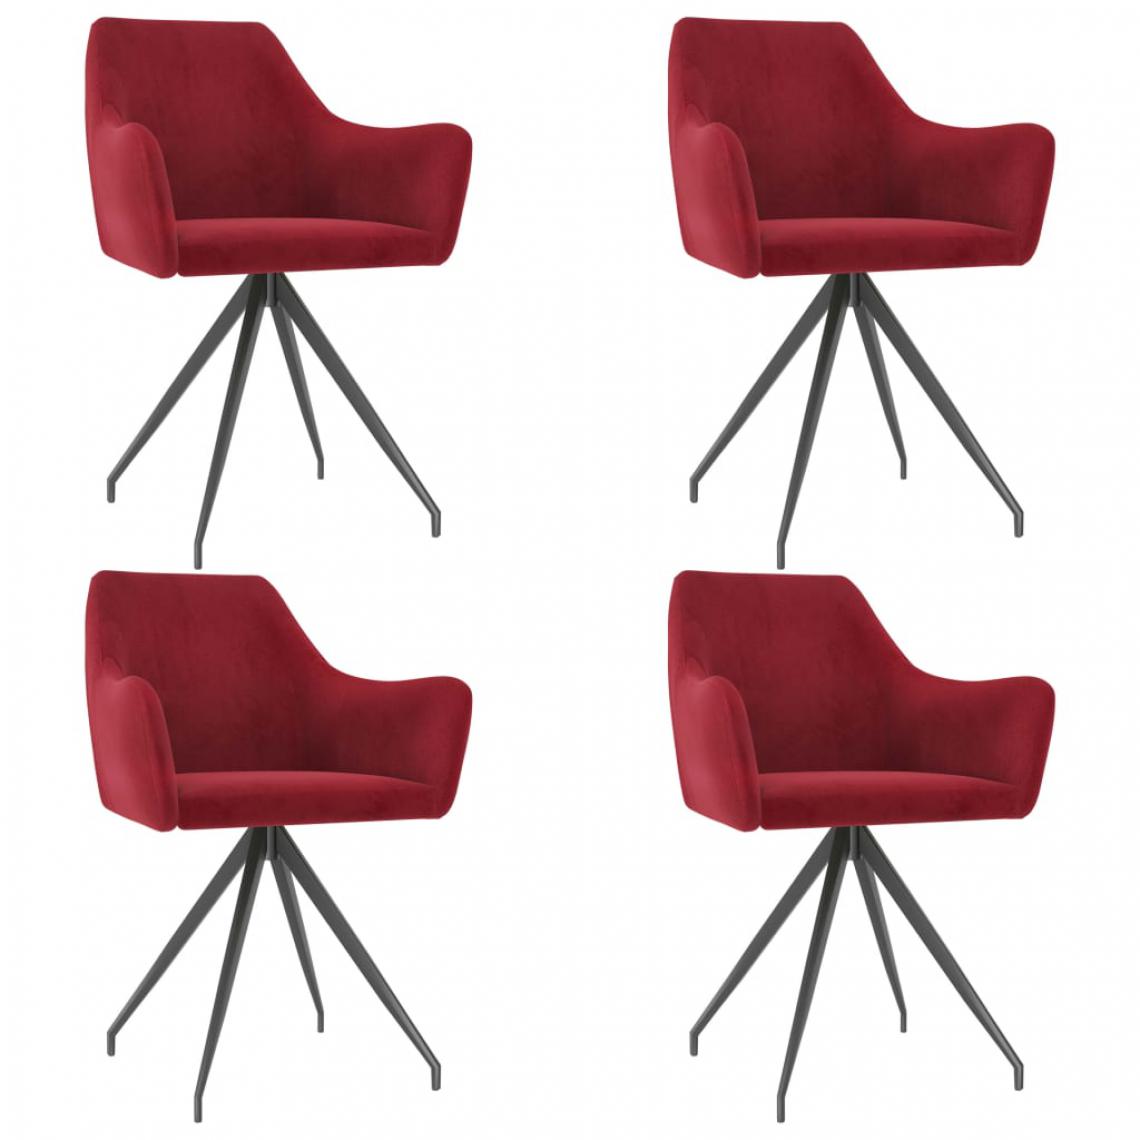 Icaverne - Moderne Fauteuils et chaises gamme San Salvador Chaises de salle à manger 4 pcs Rouge bordeaux Velours - Chaises